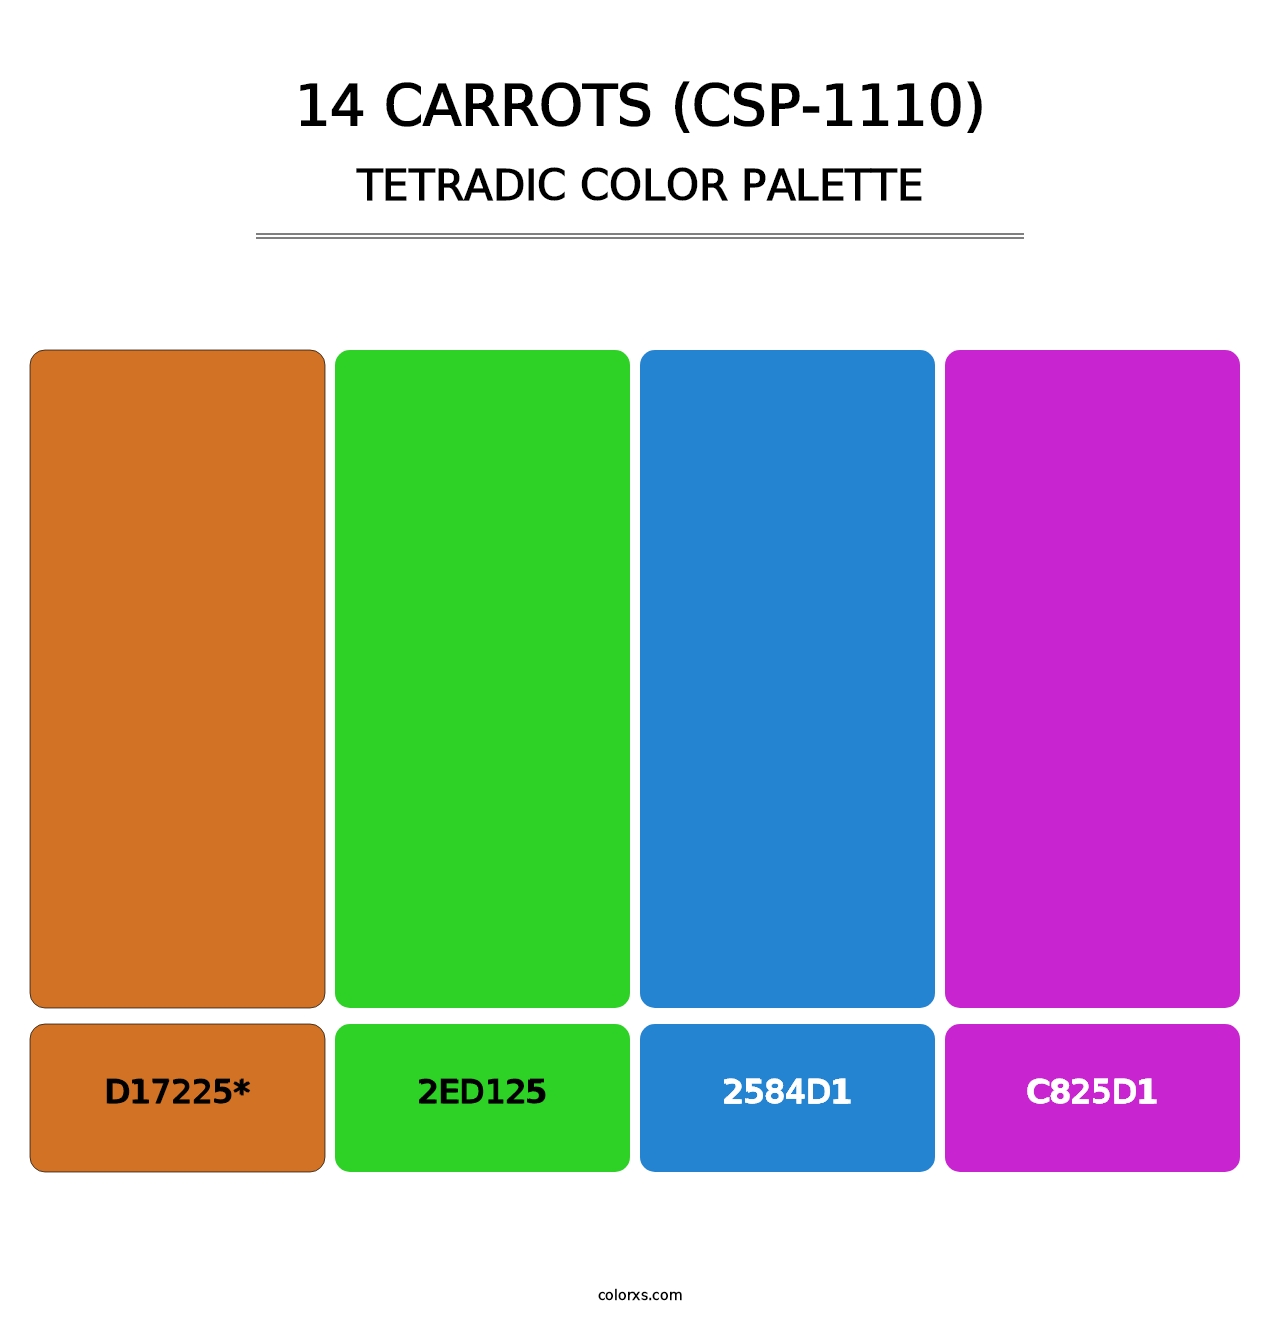 14 Carrots (CSP-1110) - Tetradic Color Palette